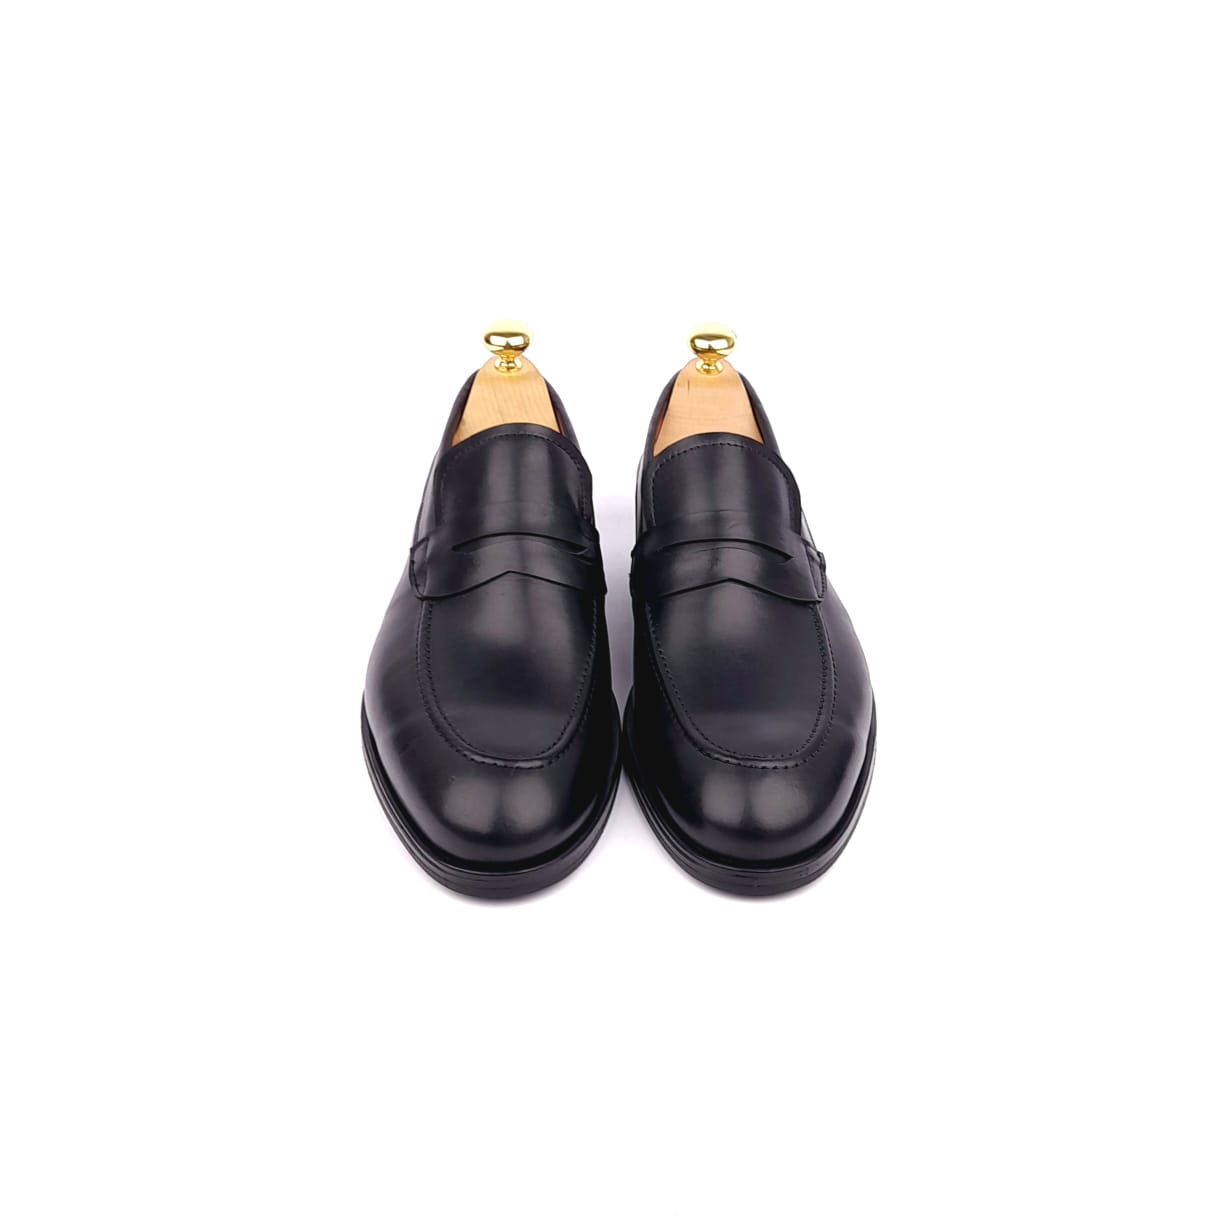 '5106 Chaussure cuir Noir